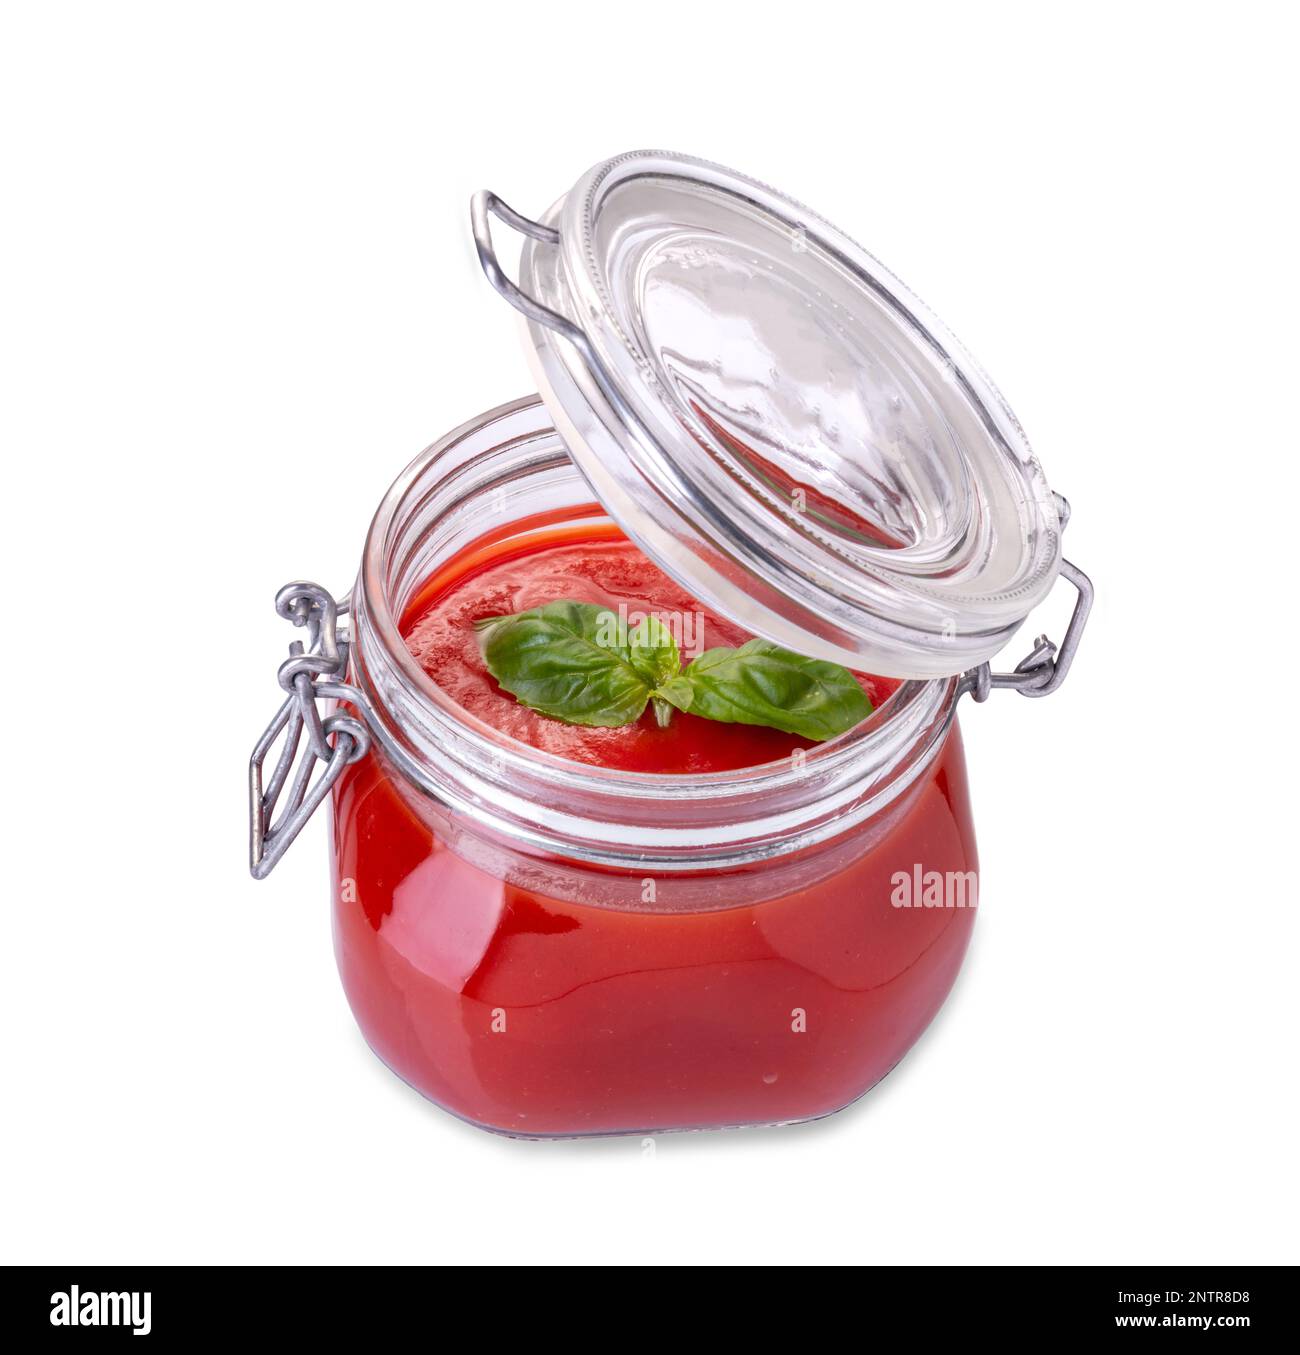 Glasbehälter mit Tomatensoße, geöffnet mit Basilikumblättern im oberen Bereich isoliert auf weißem Hintergrund, Schnittpfad inbegriffen Stockfoto